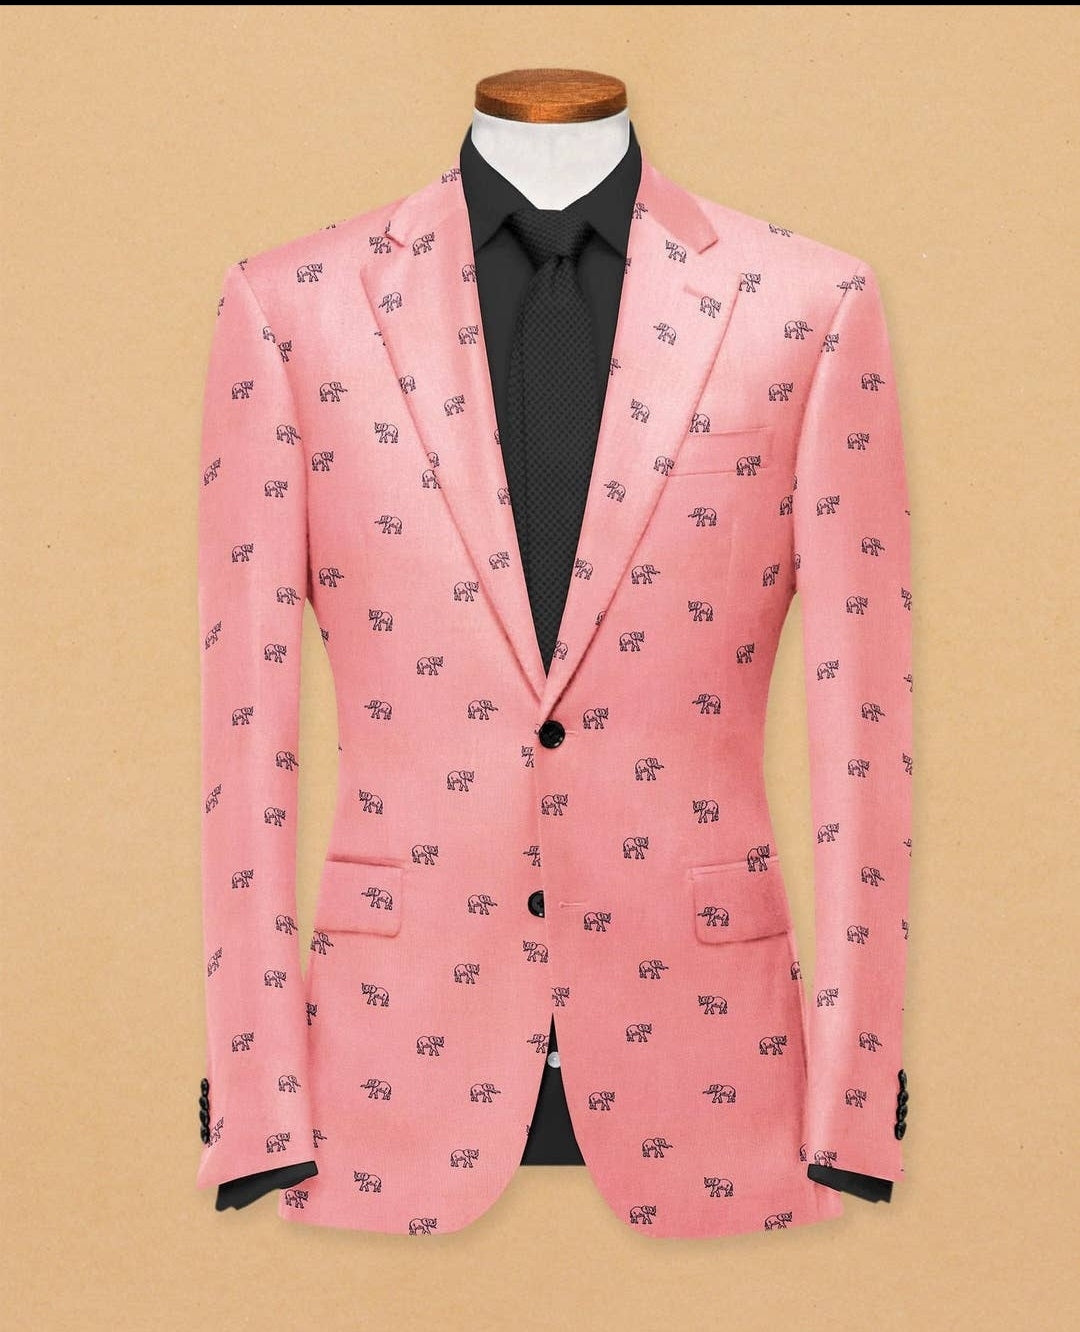 Peach Men's Two Button Dress Party Elephant Print Suit Jacket Notched Lapel Slim Fit Stylish Blazer